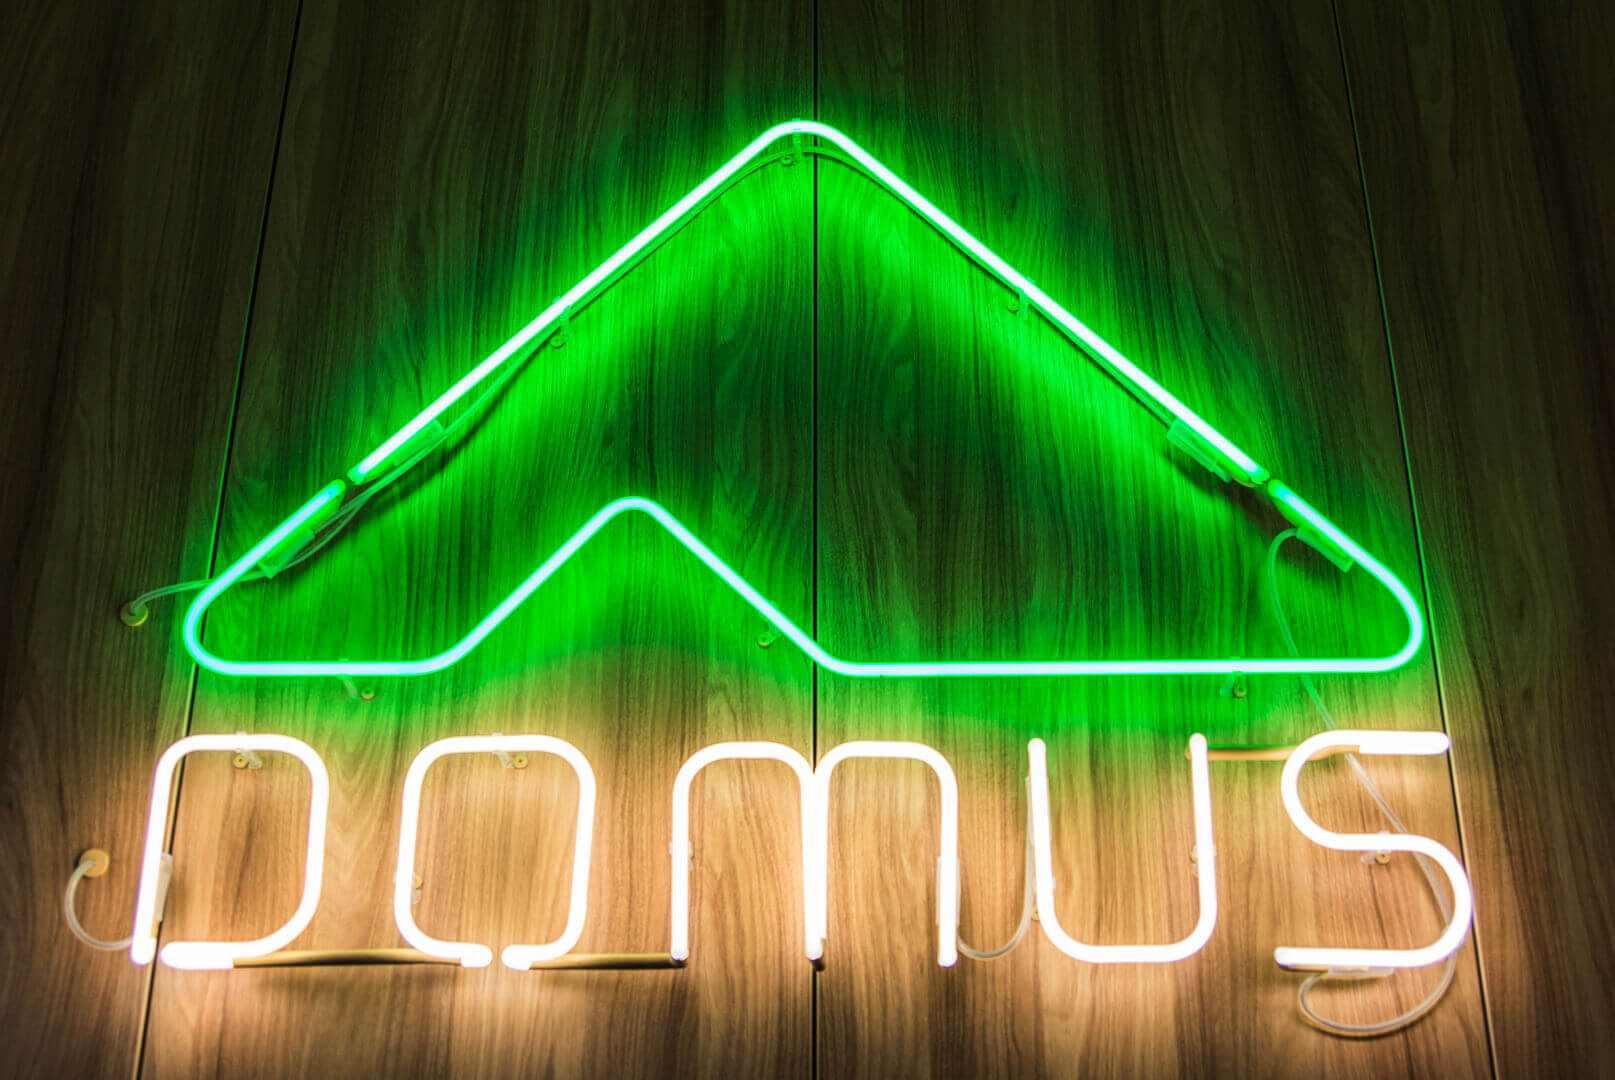 Domus - Neon-Domus-Neon-Unterlicht-Neon an einer Holzwand-Neon-Innenraum-Neon im Büro-Neon an der Wand-Buchstaben-Neon